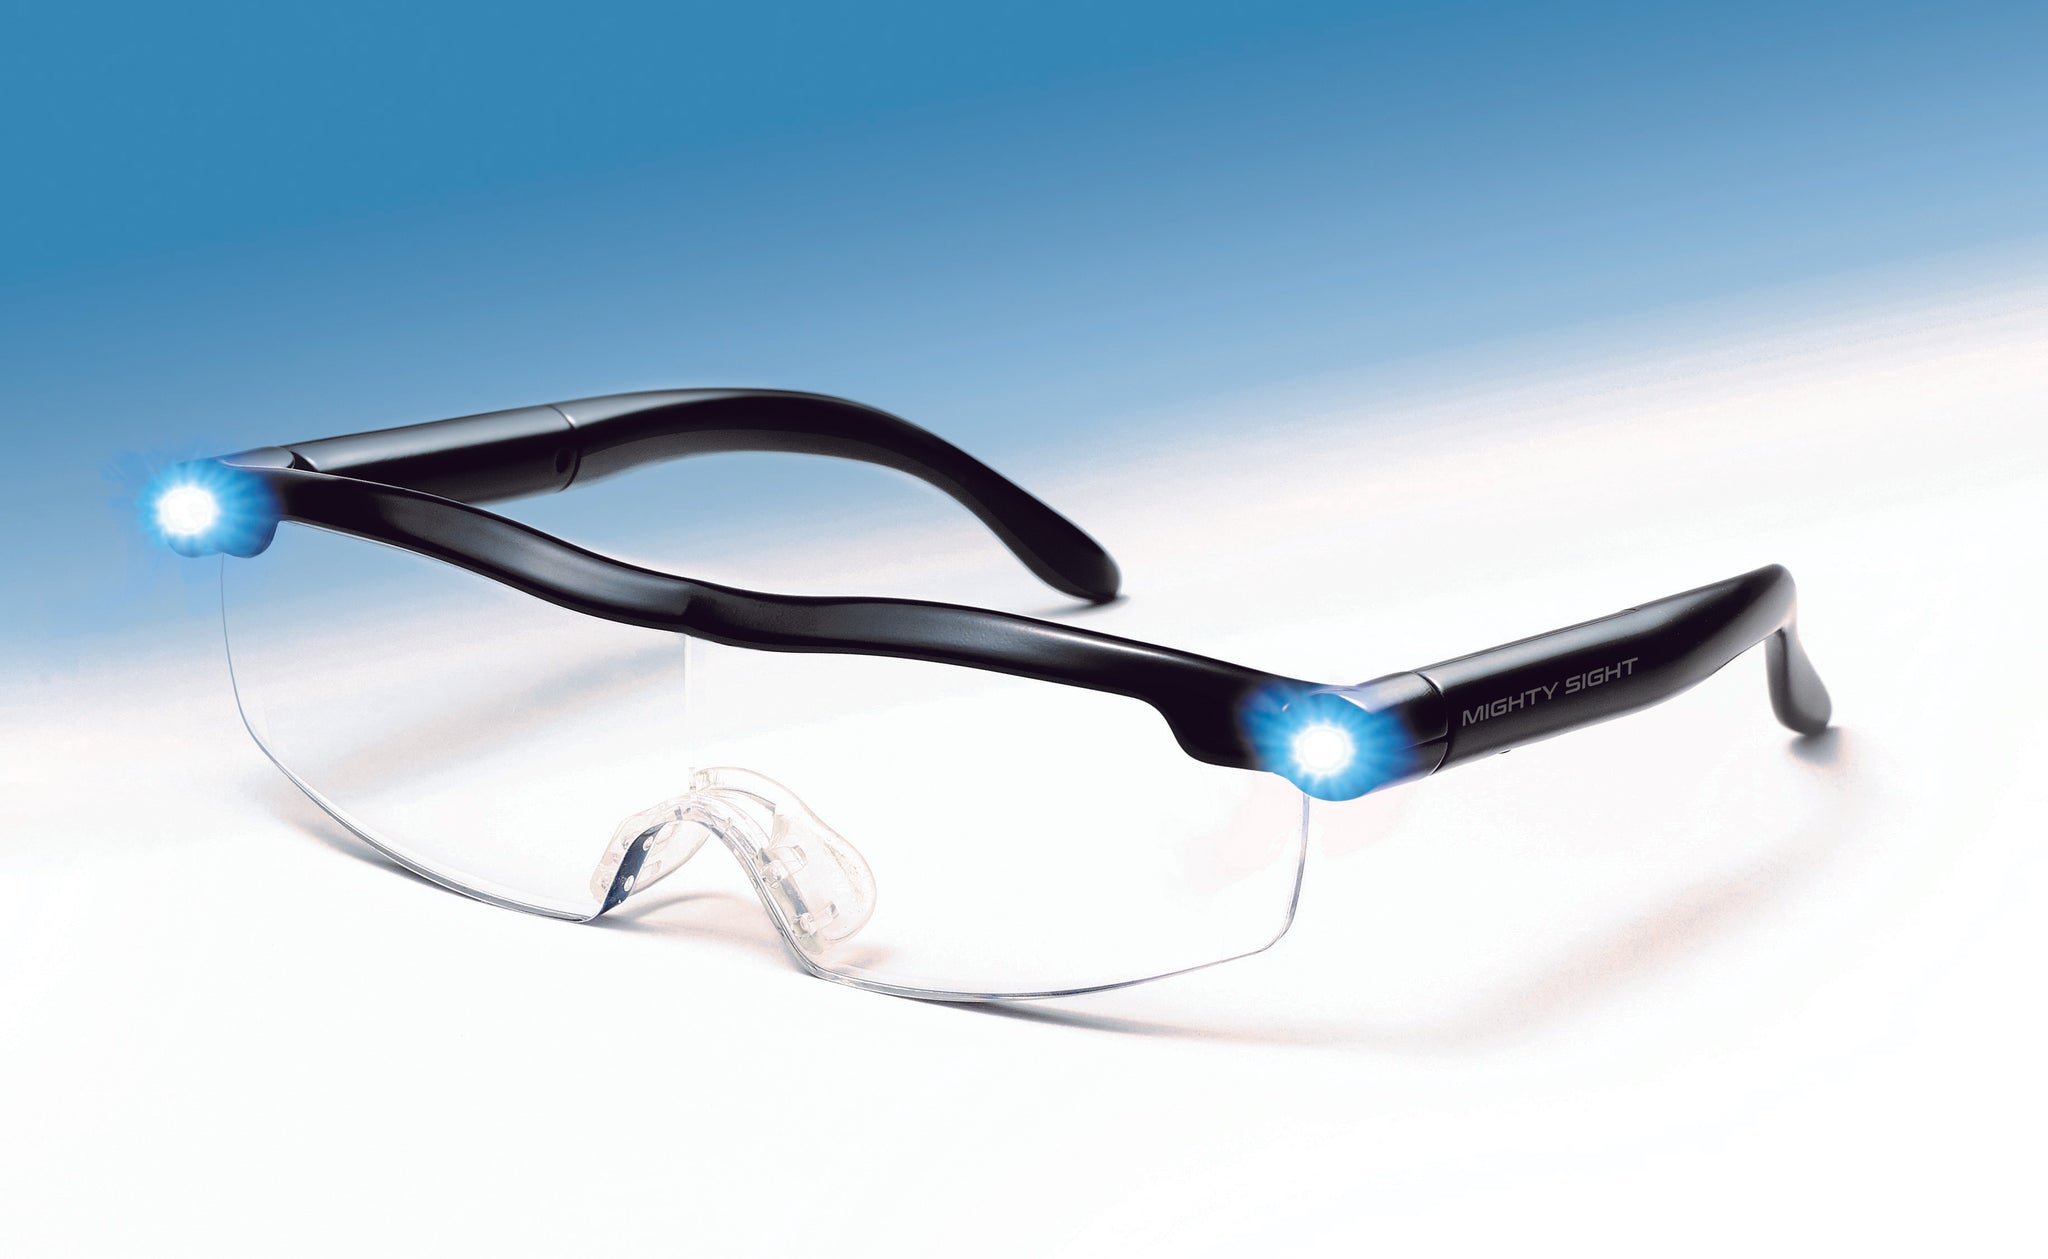  Ontel Mighty Sight LED Magnifying Eyewear : Everything Else